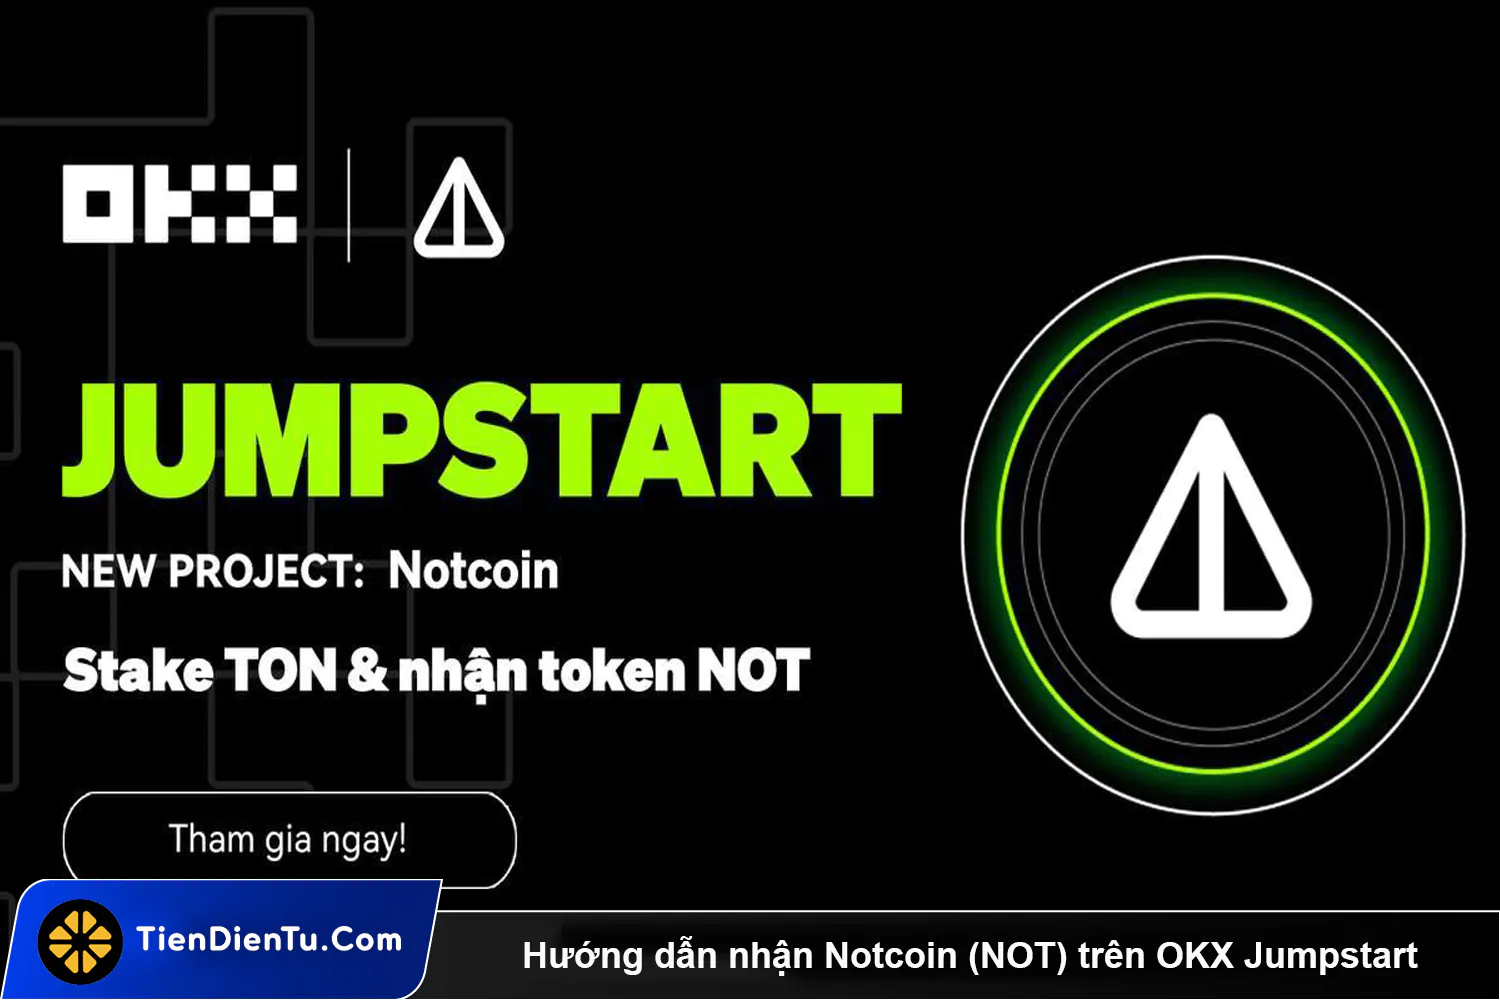 Huong dan nhan Notcoin NOT tren OKX Jumpstart Tiendientu